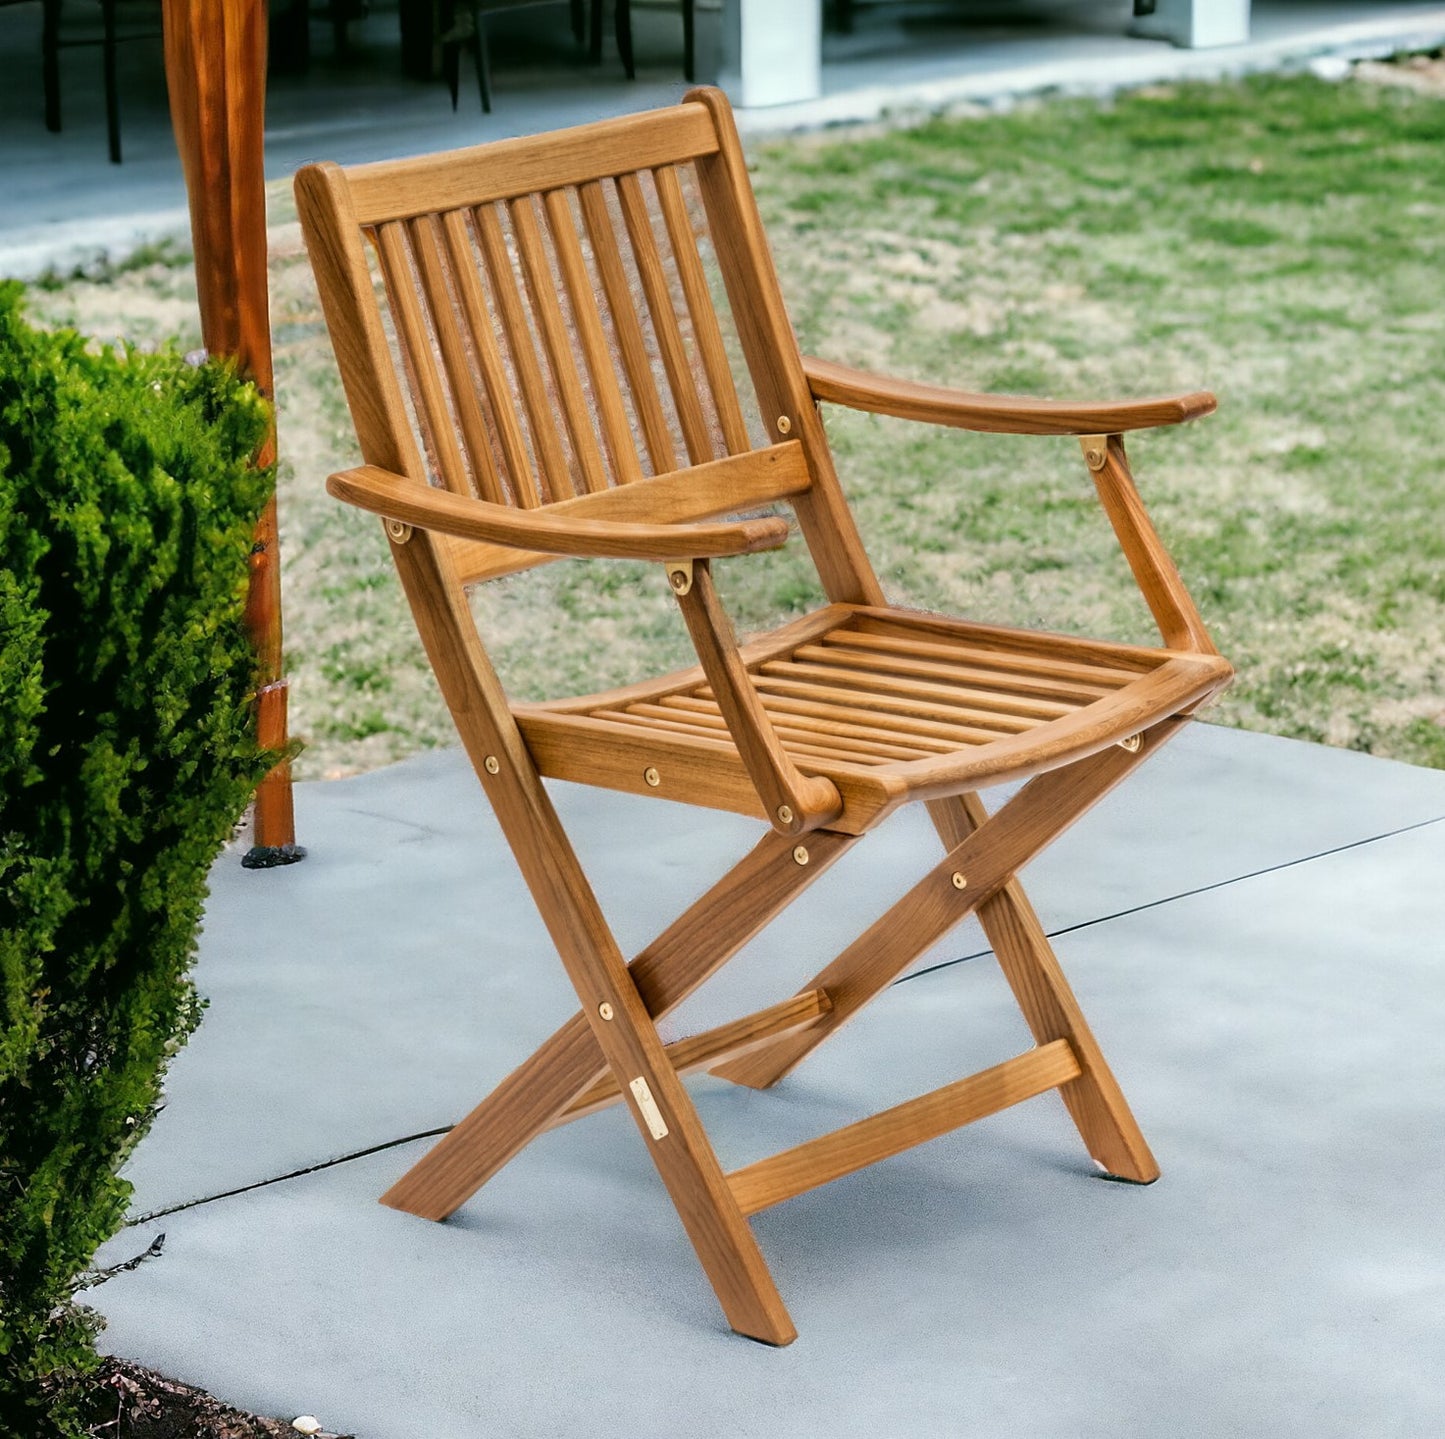 24" Brown Solid Wood Indoor Outdoor Deck Chair